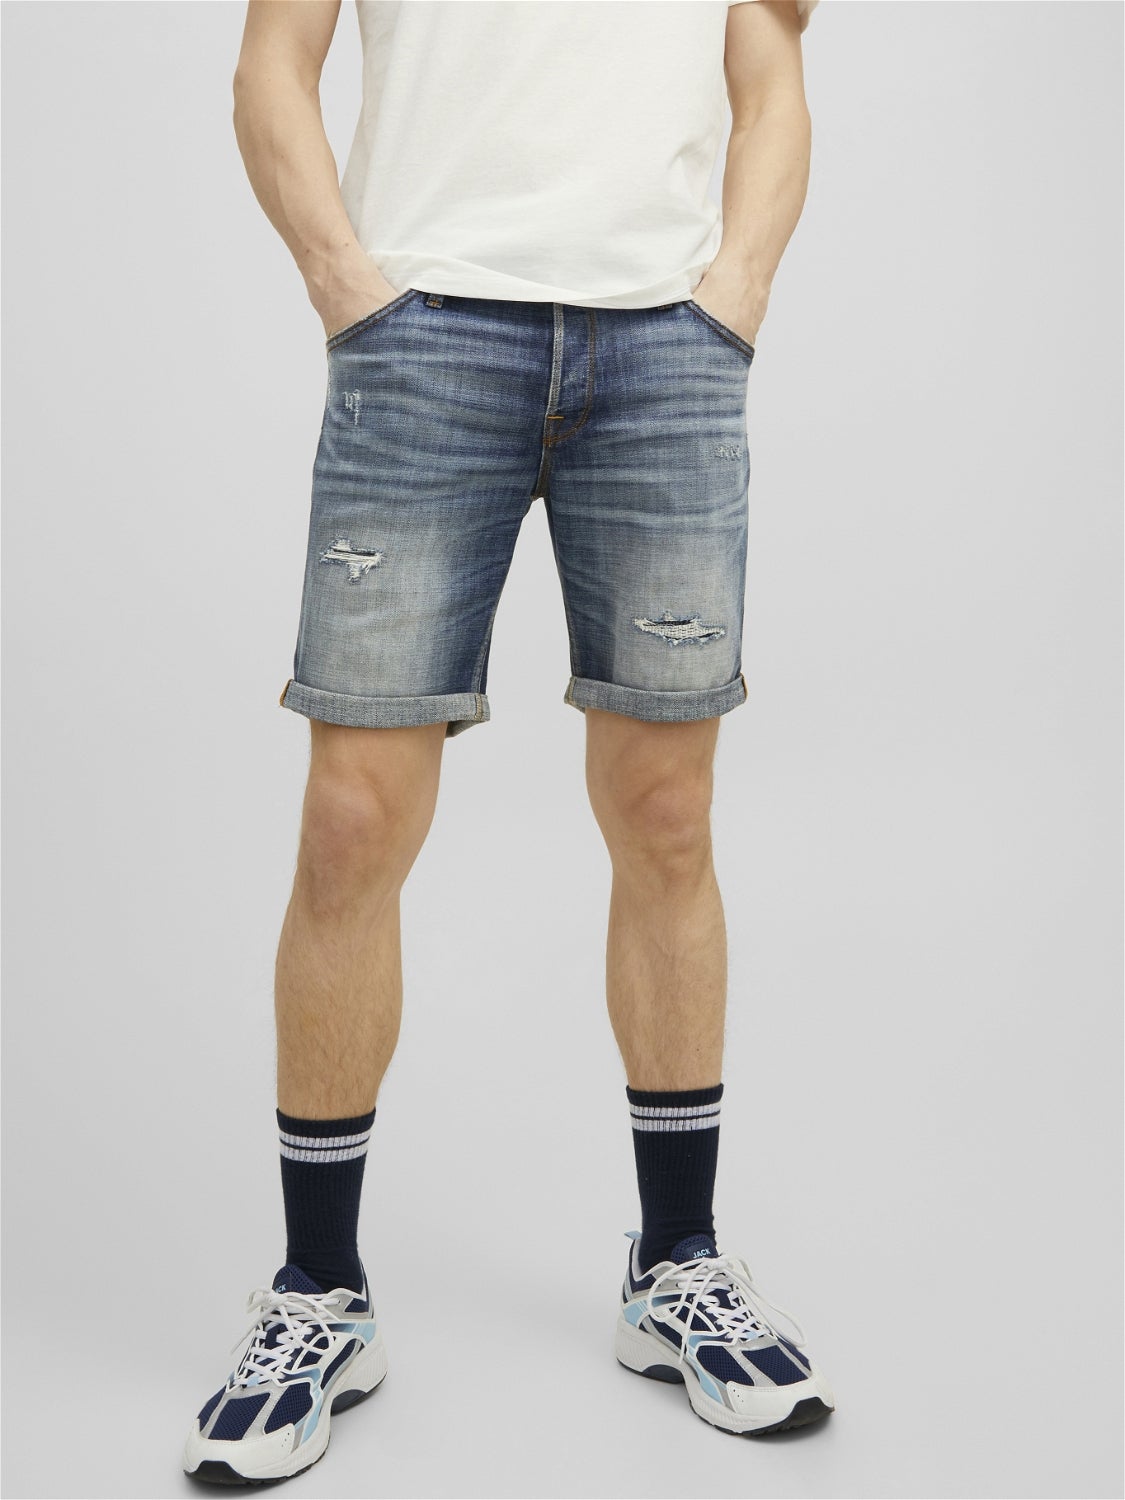 HERREN Jeans Basisch Blau S Jack & Jones Shorts jeans Rabatt 57 % 